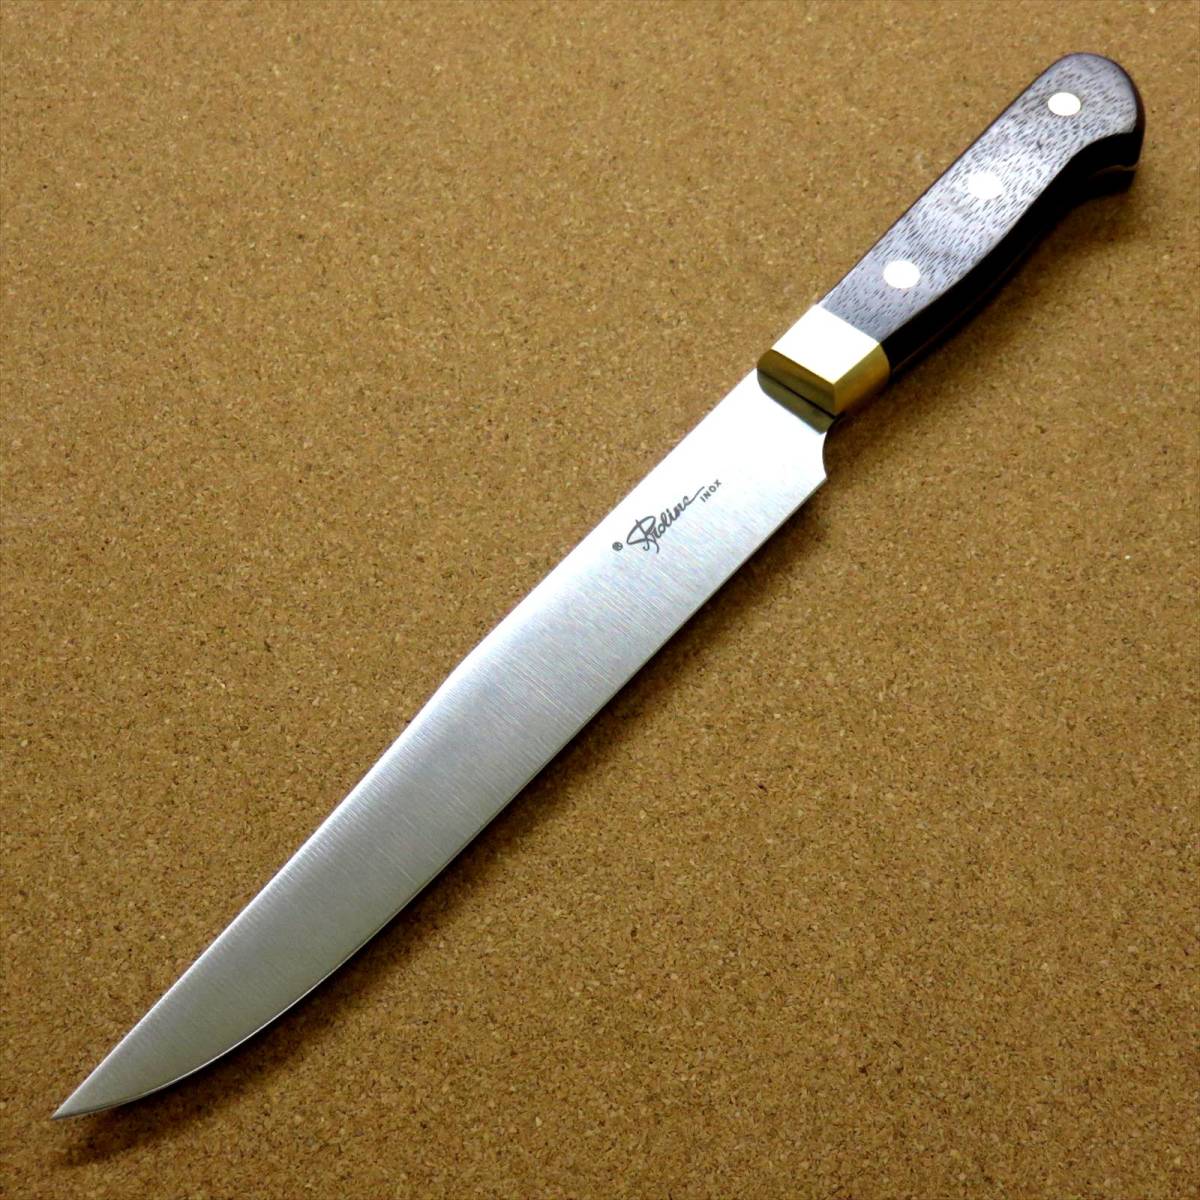 関の刃物 カービングナイフ 20cm (200mm) 8Aステンレス 真鍮口金付き ローストビーフなど肉の塊を切り分ける 両刃包丁 日本製 在庫処分品_画像8